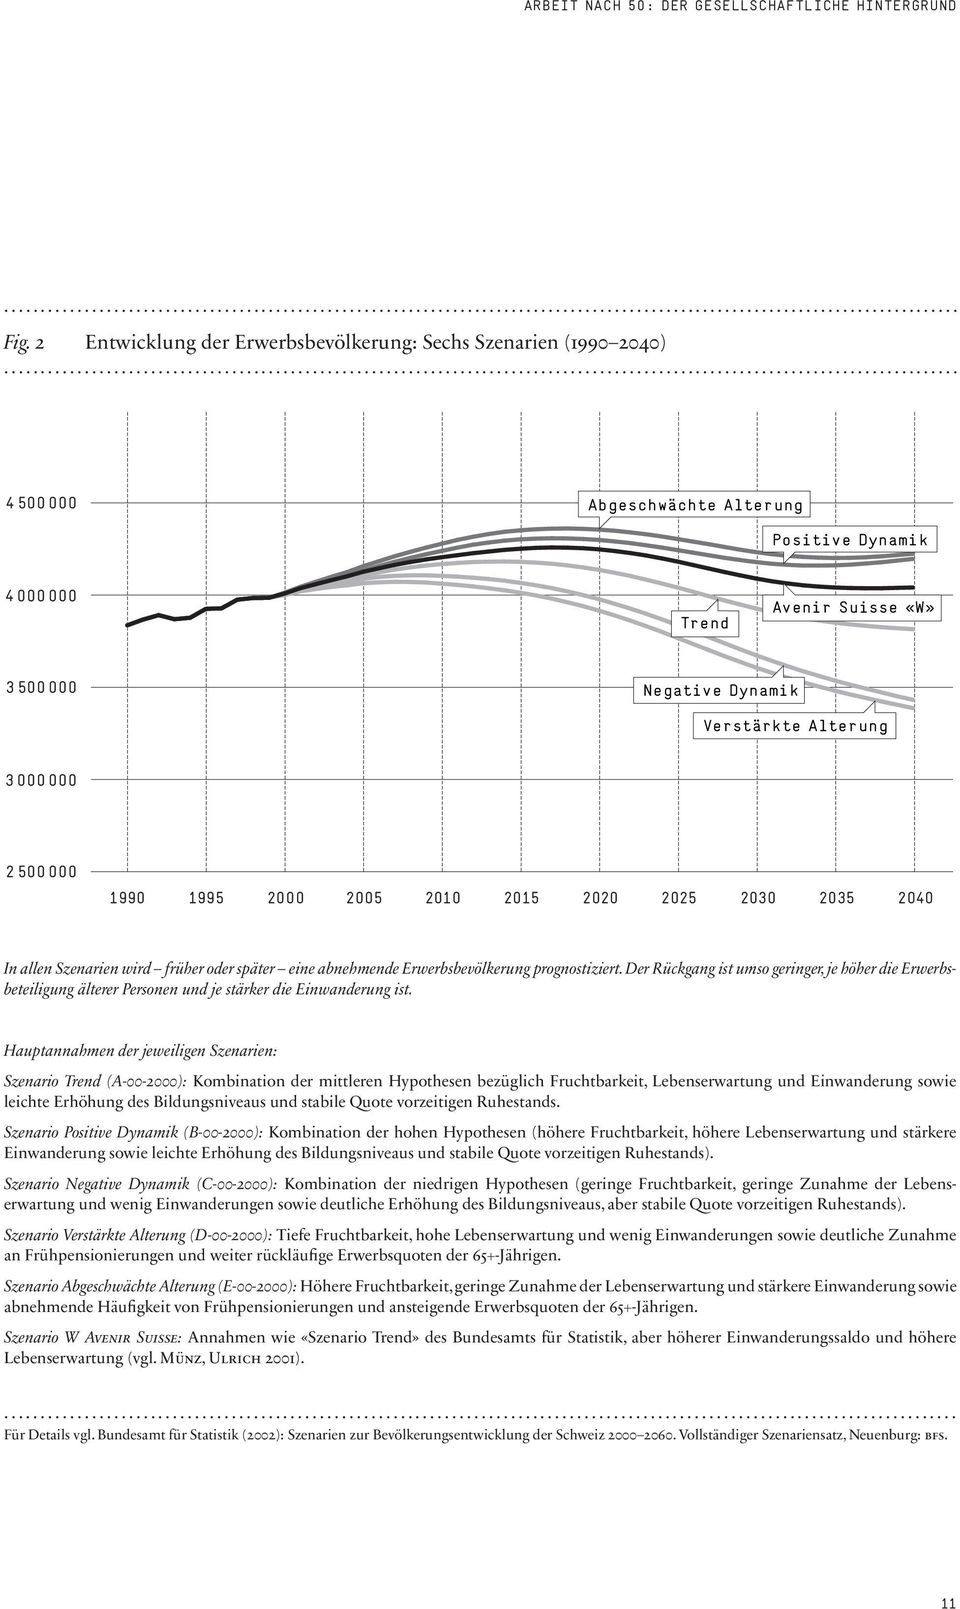 Der Rückgang ist umso geringer, je höher die Erwerbsbeteiligung älterer Personen und je stärker die Einwanderung ist.